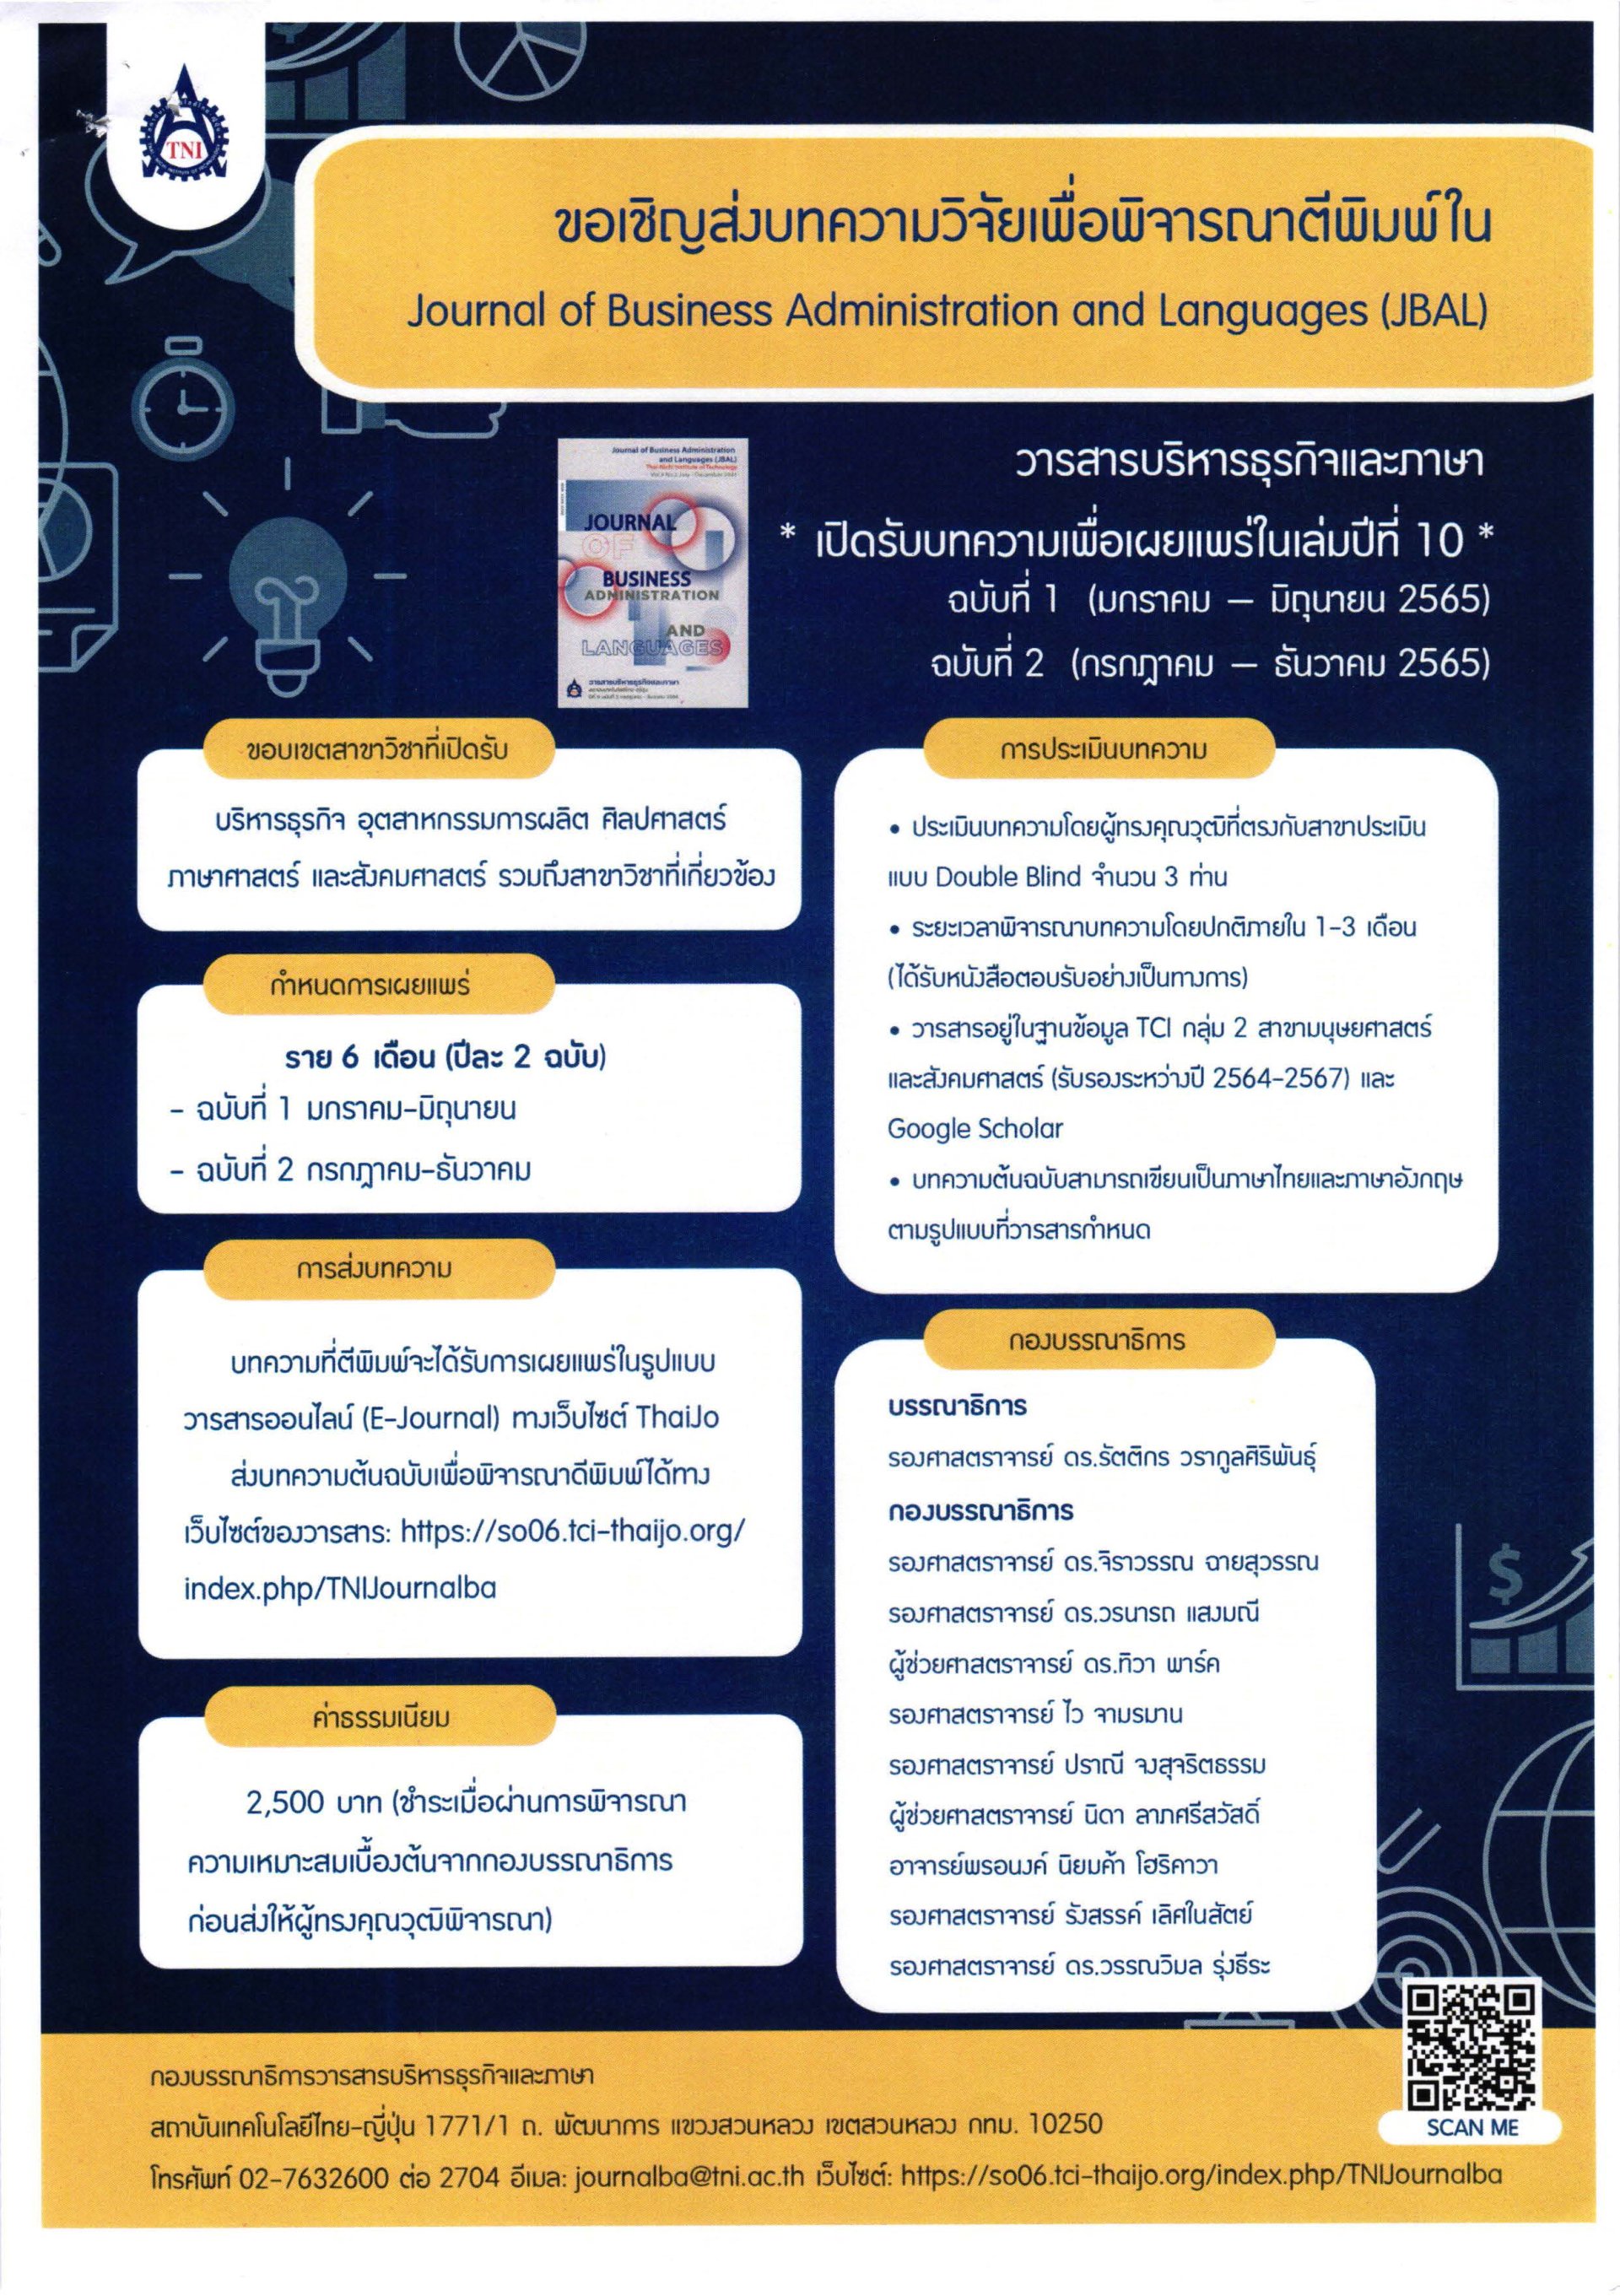 สถาบันเทคโนโลยีไทย-ญี่ปุ่น ประชาสัมพันธ์เชิญชวนส่งบทความวิจัยตีพิมพ์ในวารสาร Journal of Business Administration and Languages (JBAL)